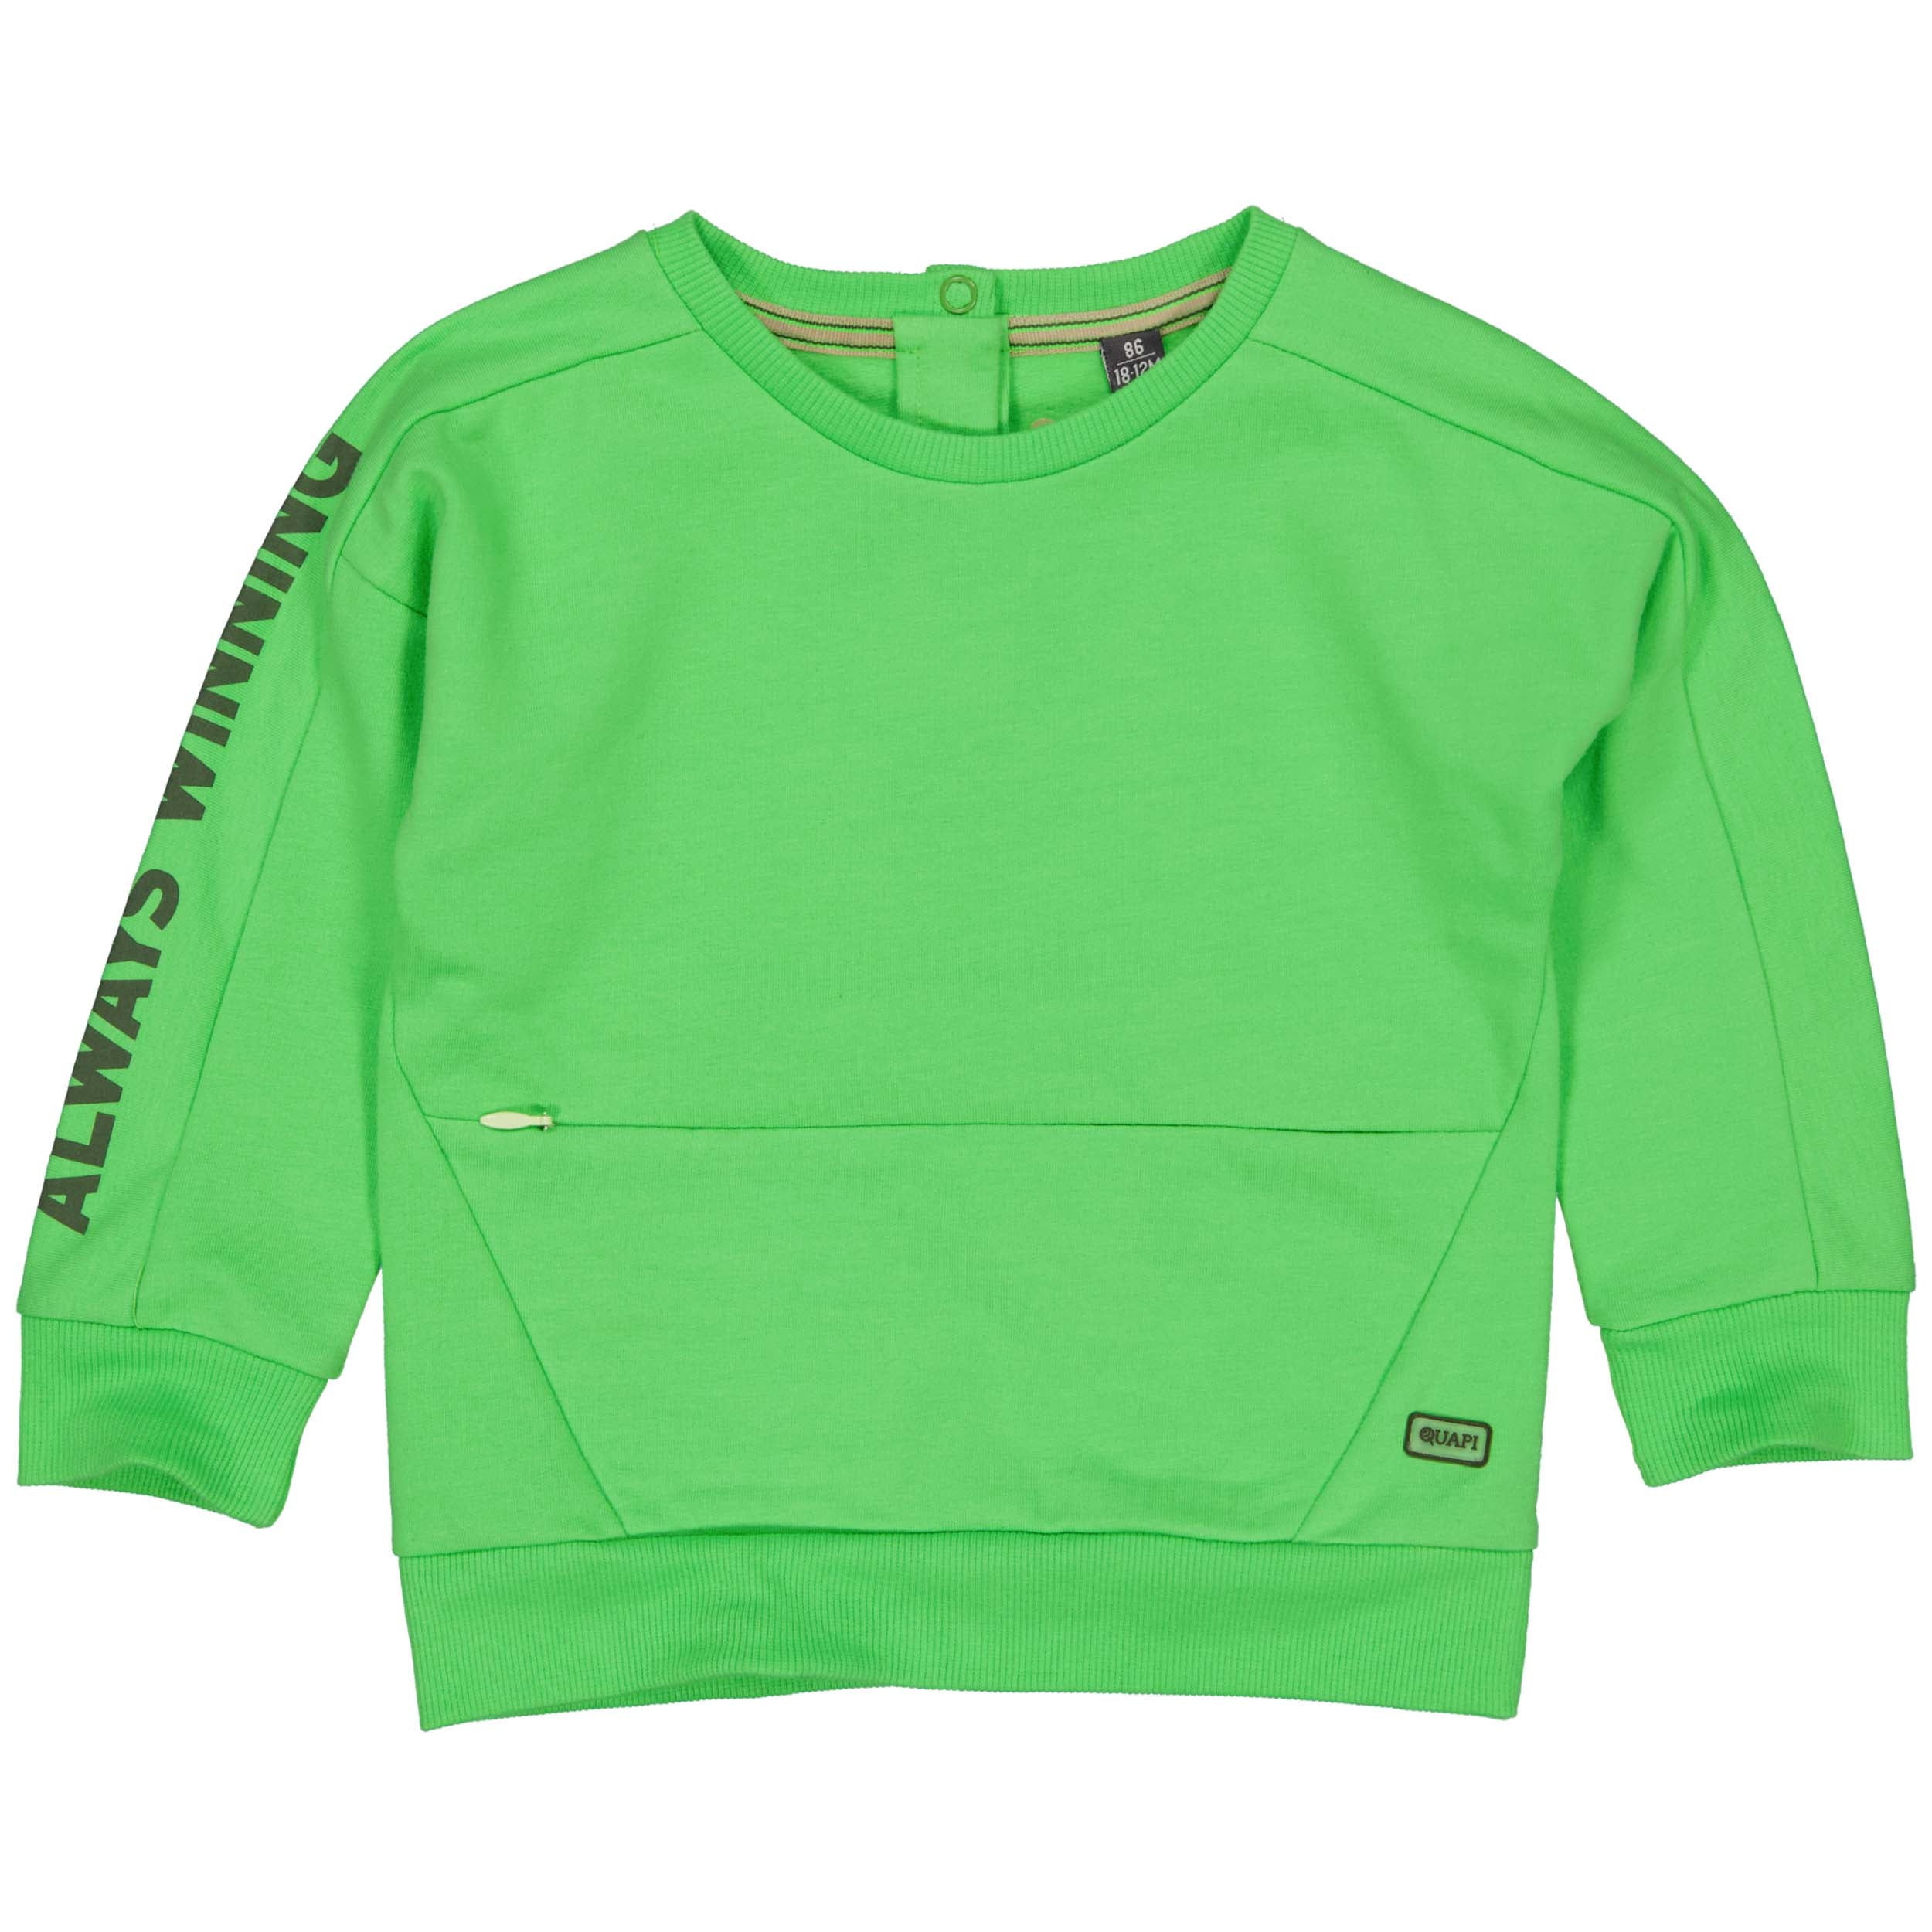 Jongens Sweater SENNOW221 van Quapi in de kleur Green Apple in maat 86.